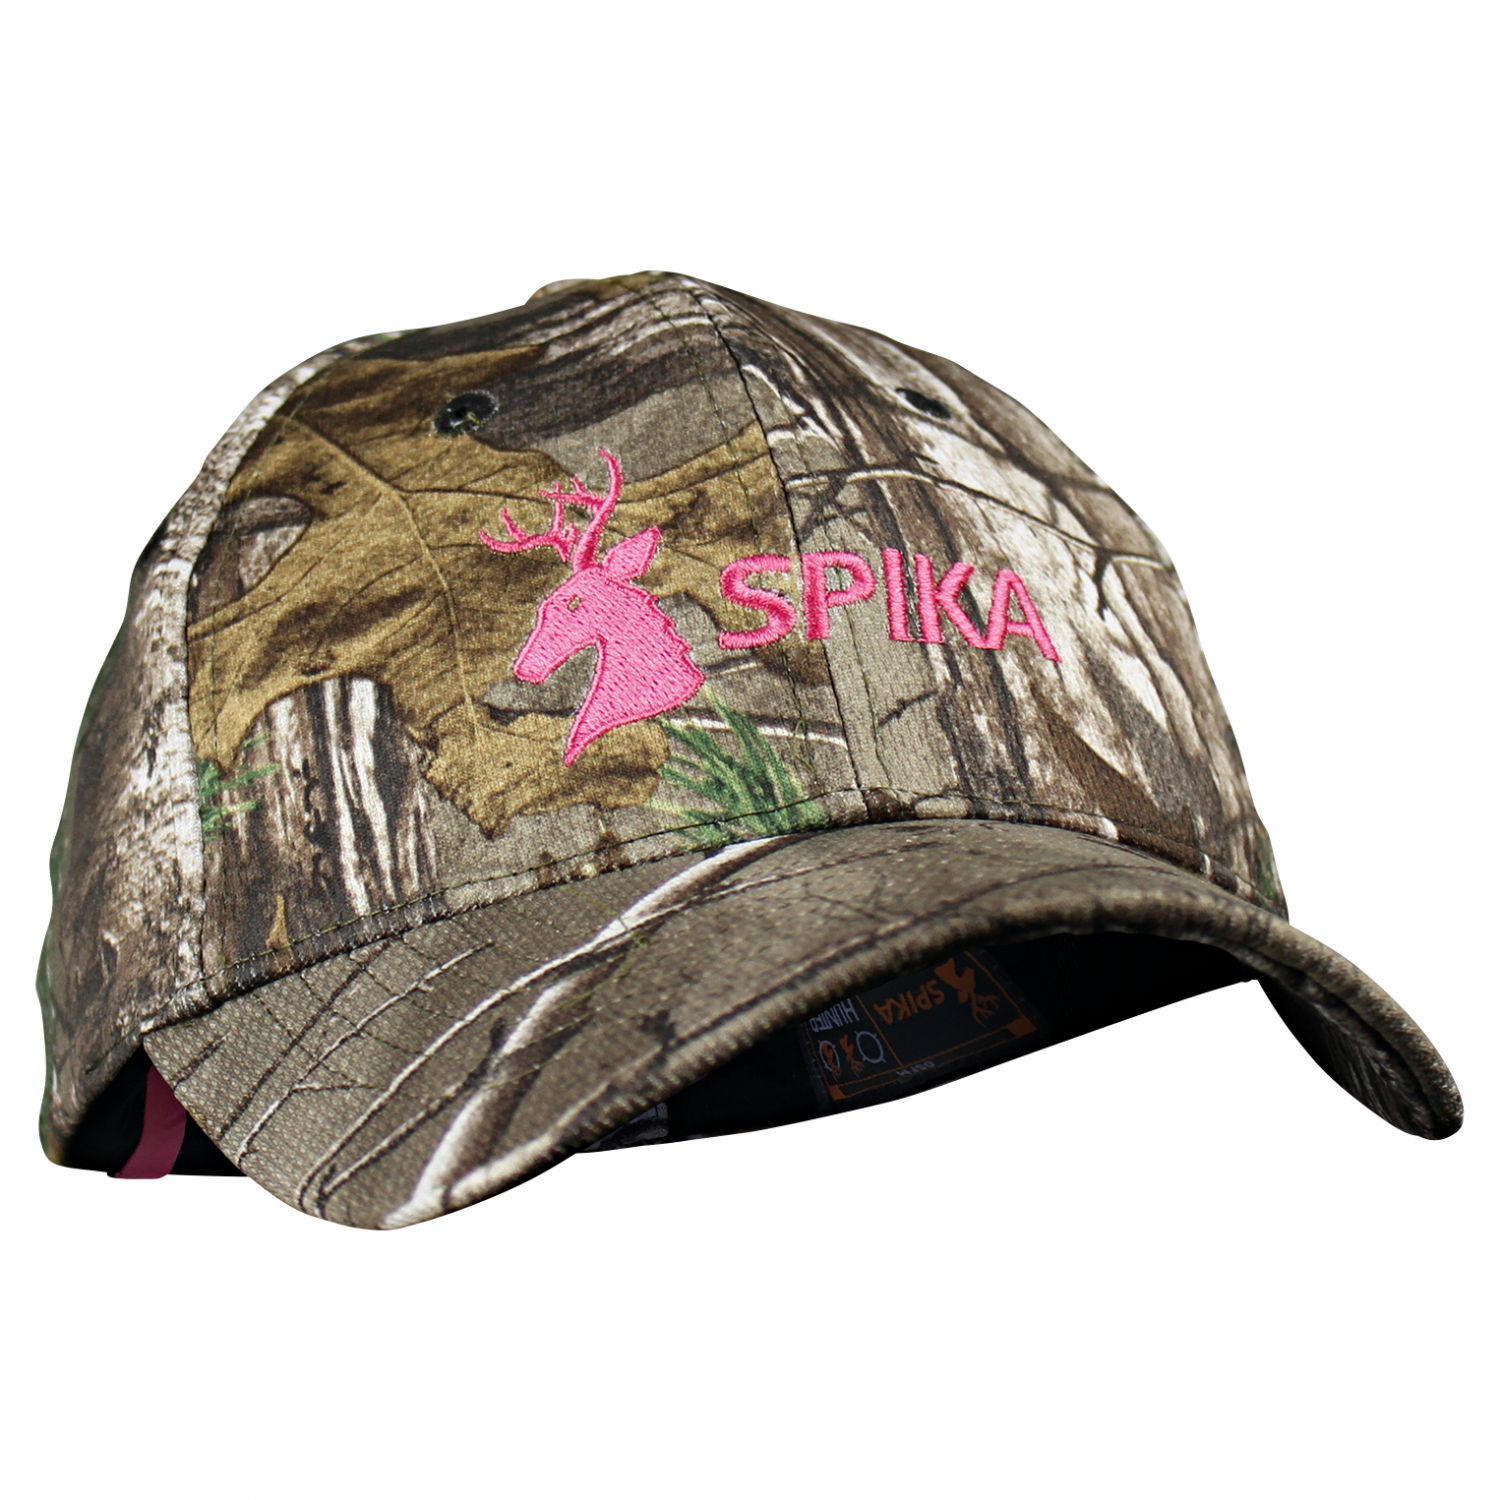 Spika Women's Cap (camo/pink) 